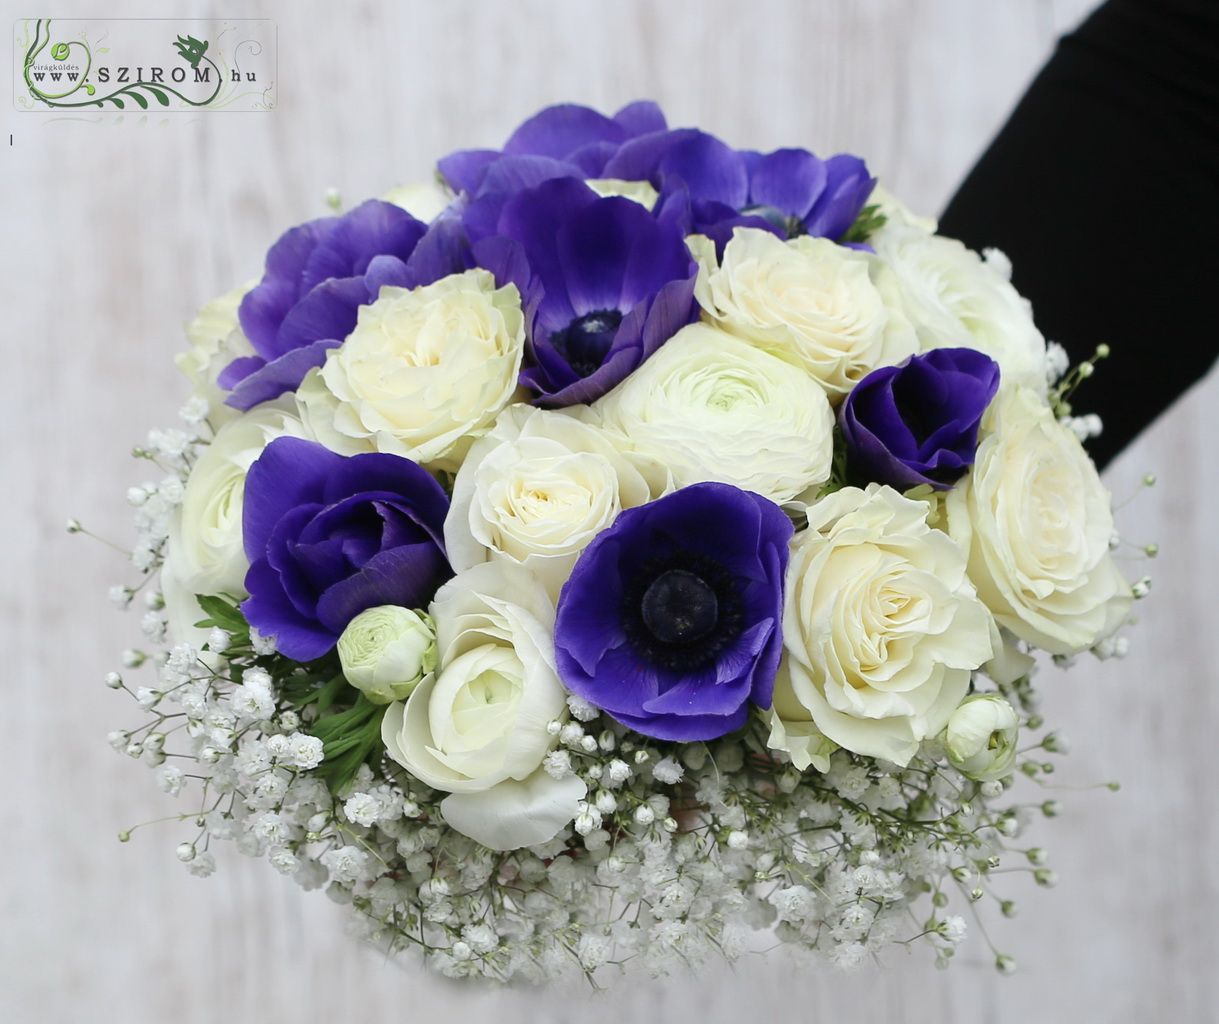 Menyasszonyi csokor (rózsa, boglárka, anemone, rezgő, fehér, kék)